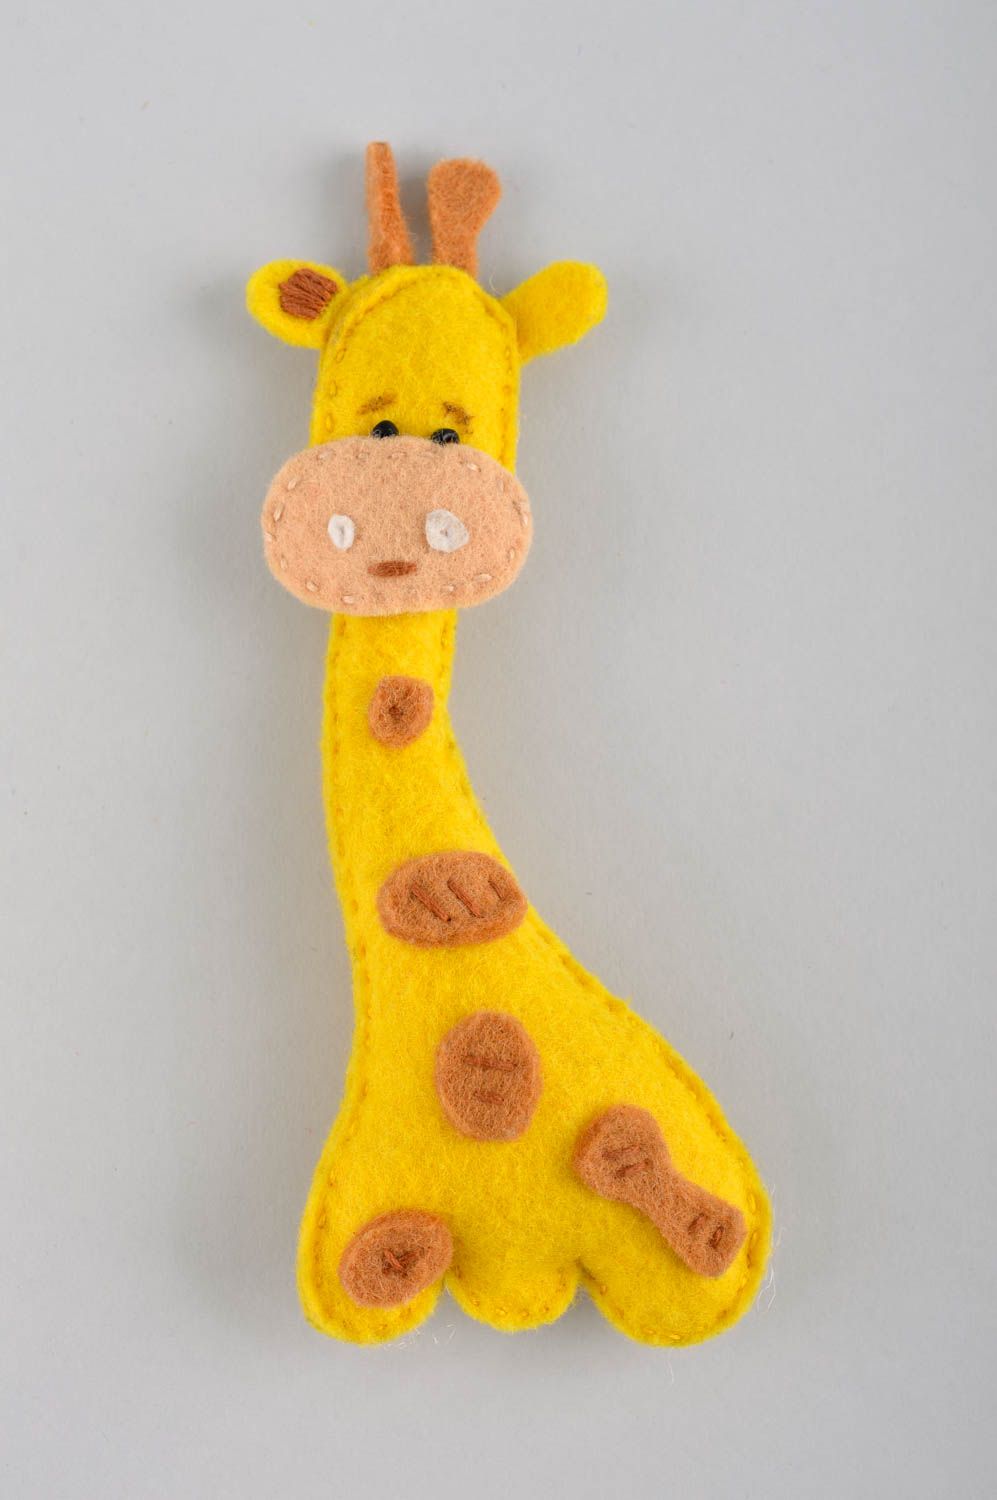 Handmade Filz Tier Giraffe Spielzeug Geschenk Idee aus Filzwolle gelb knuddelig foto 2